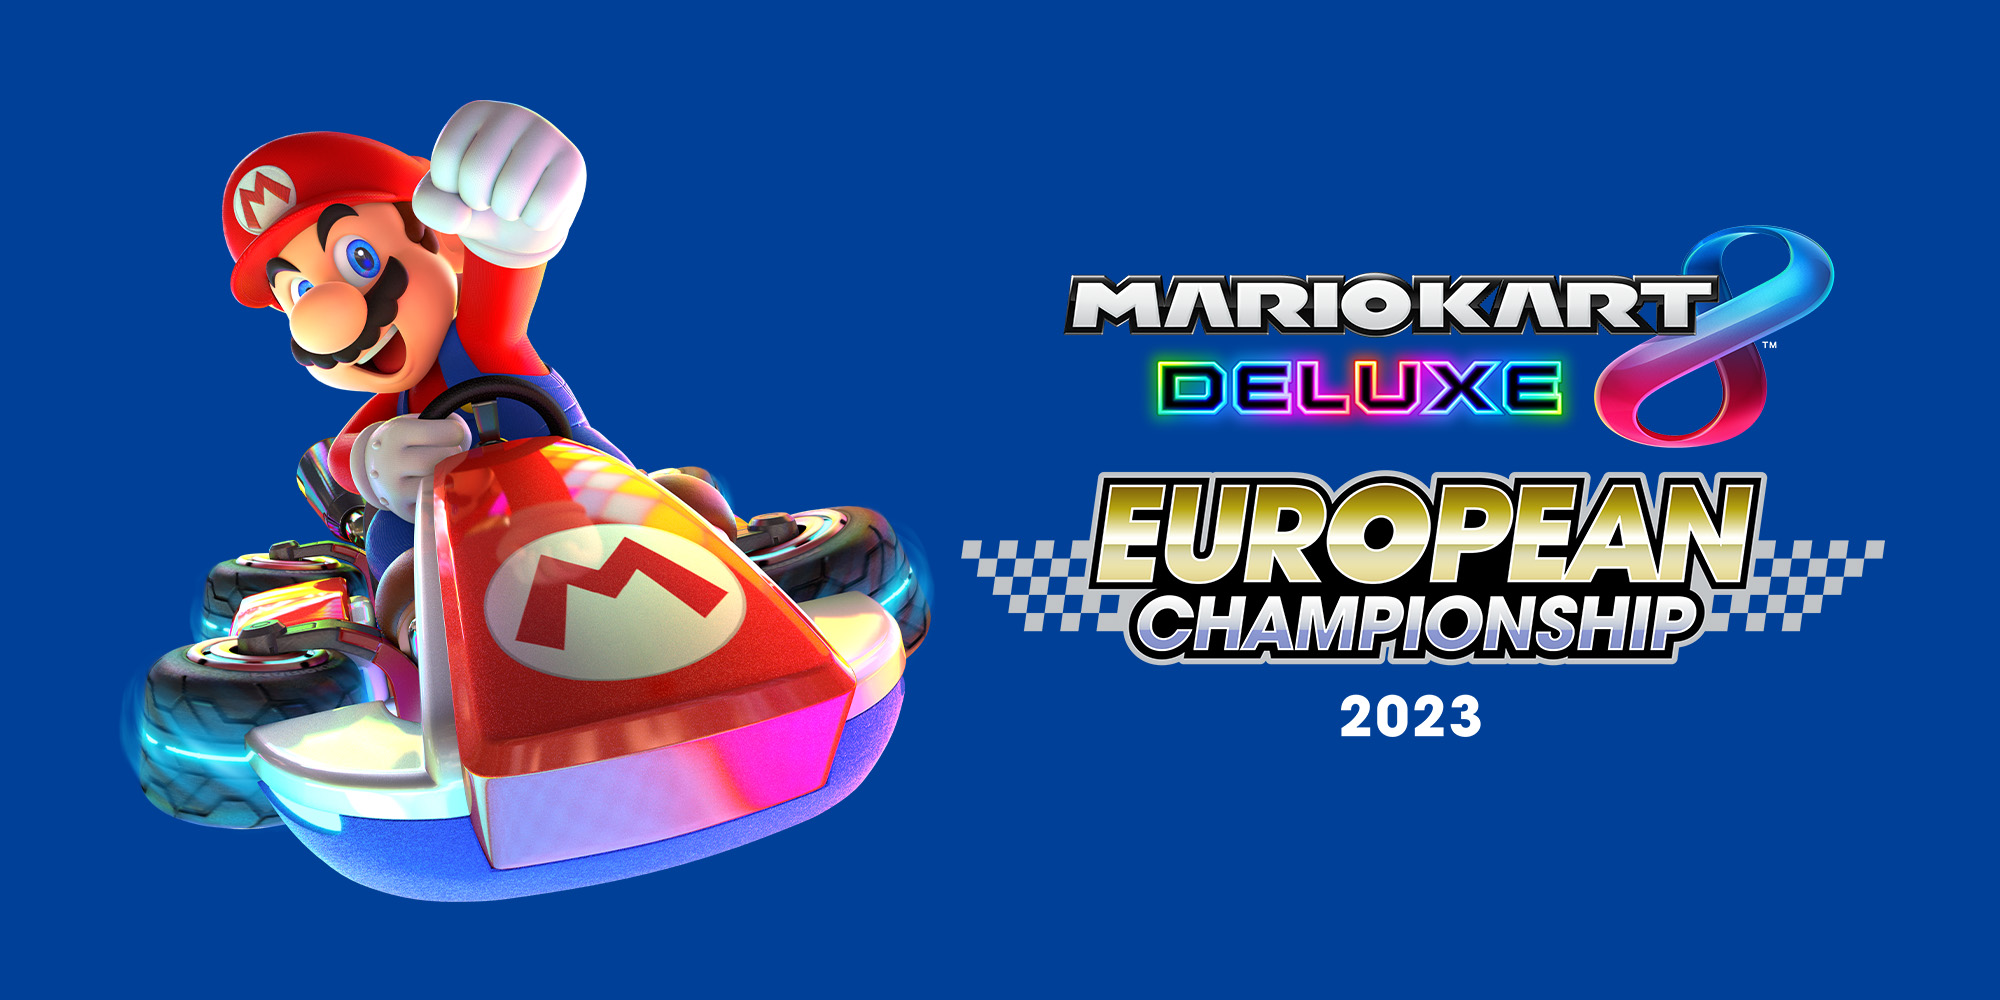 Il Mario Kart 8 Deluxe European Championship 2023 è arrivato!